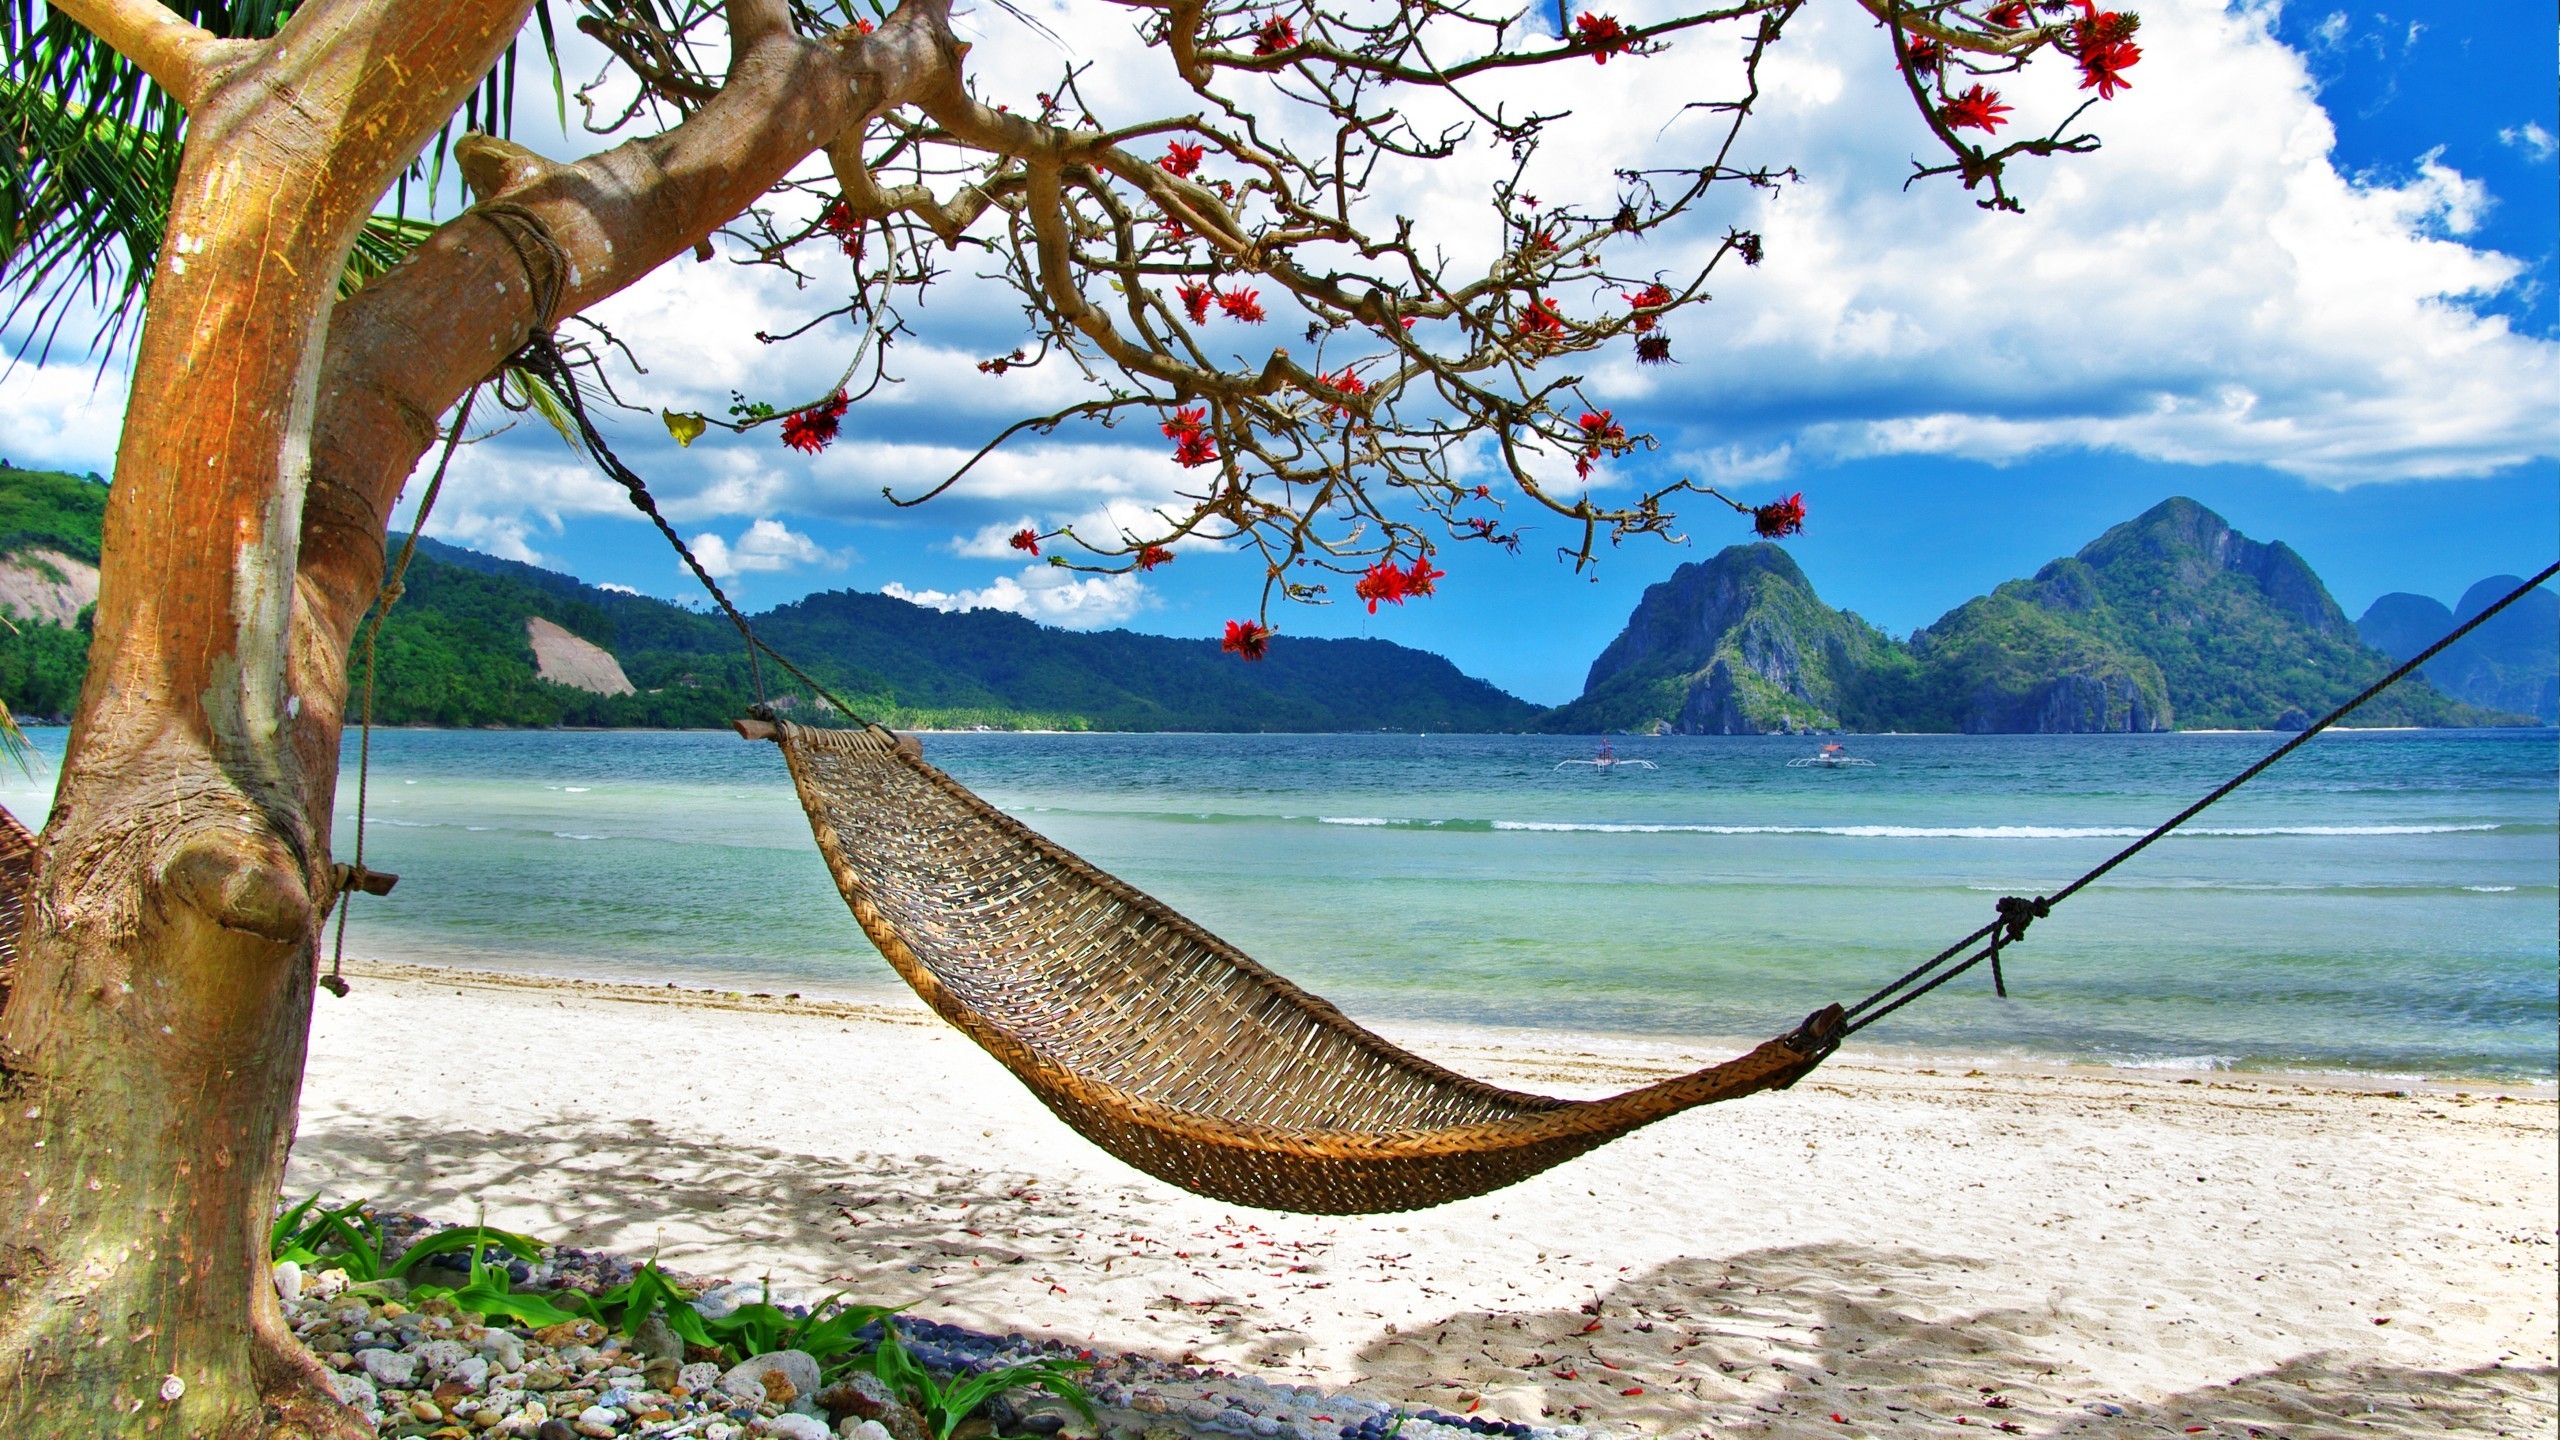 Paradise Relaxing Corner for 2560x1440 HDTV resolution